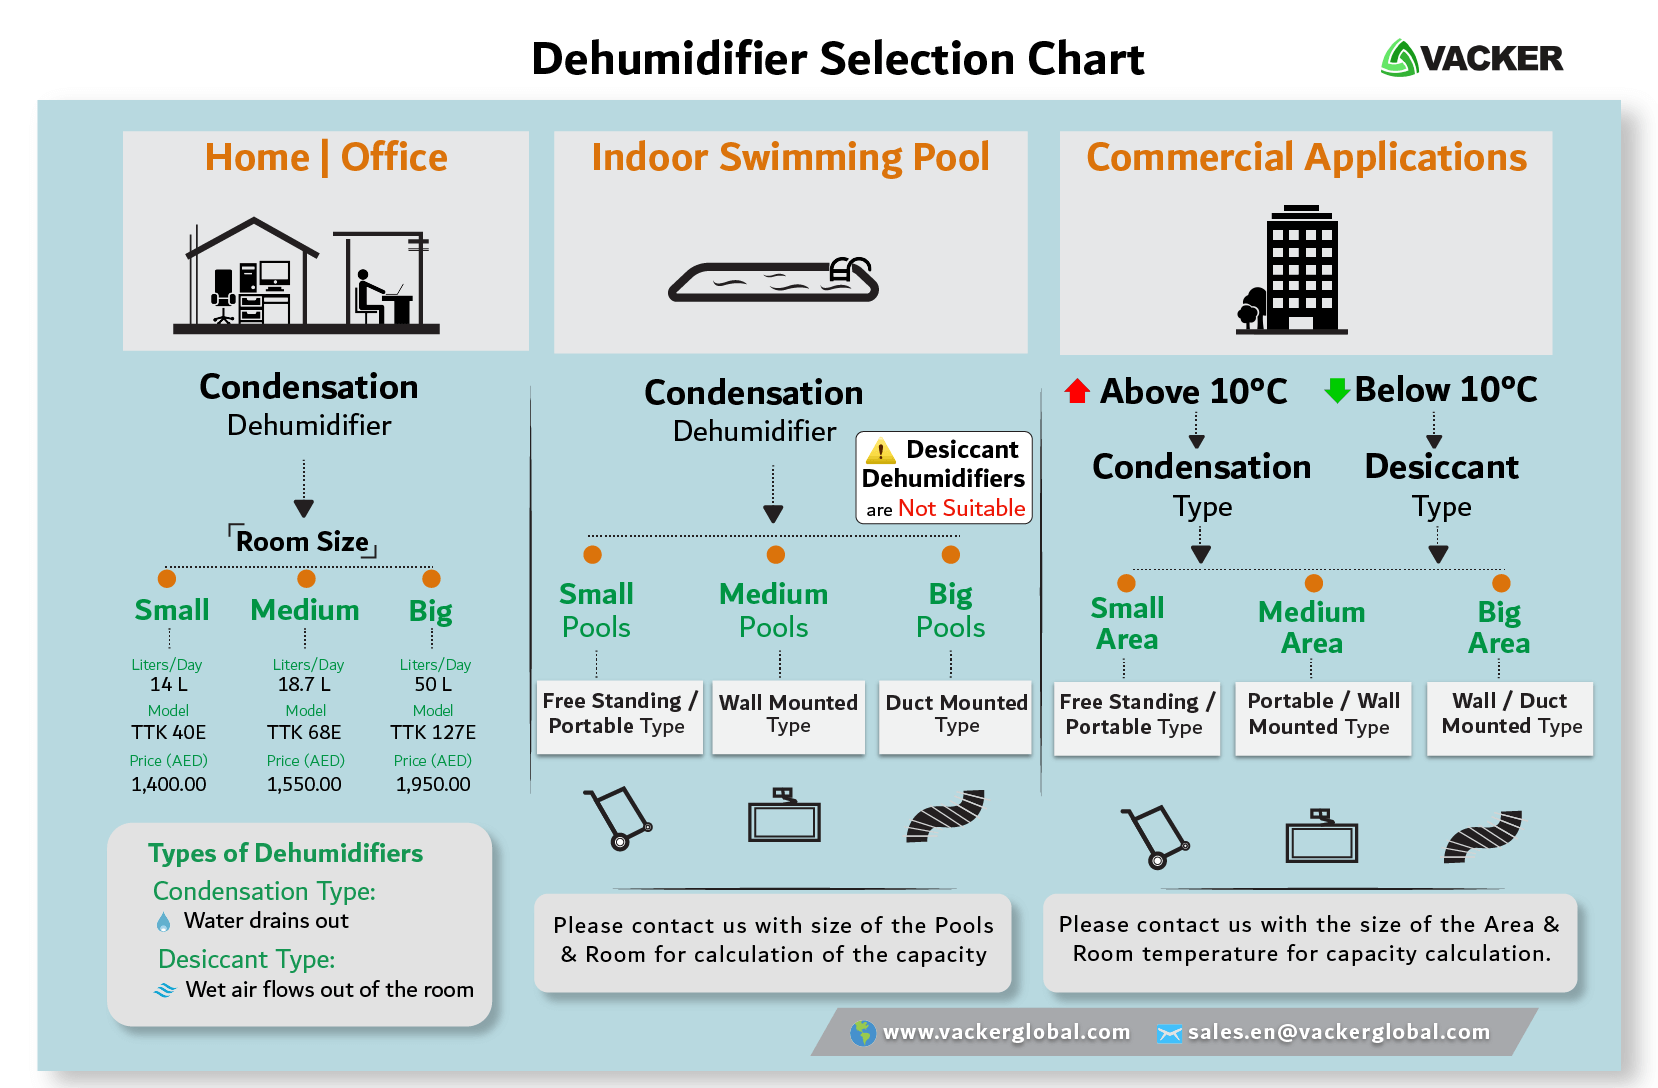 how-to-select-dehumidifier-UAE-Saudi-Qatar-Oman-Bahrain-Kuwait